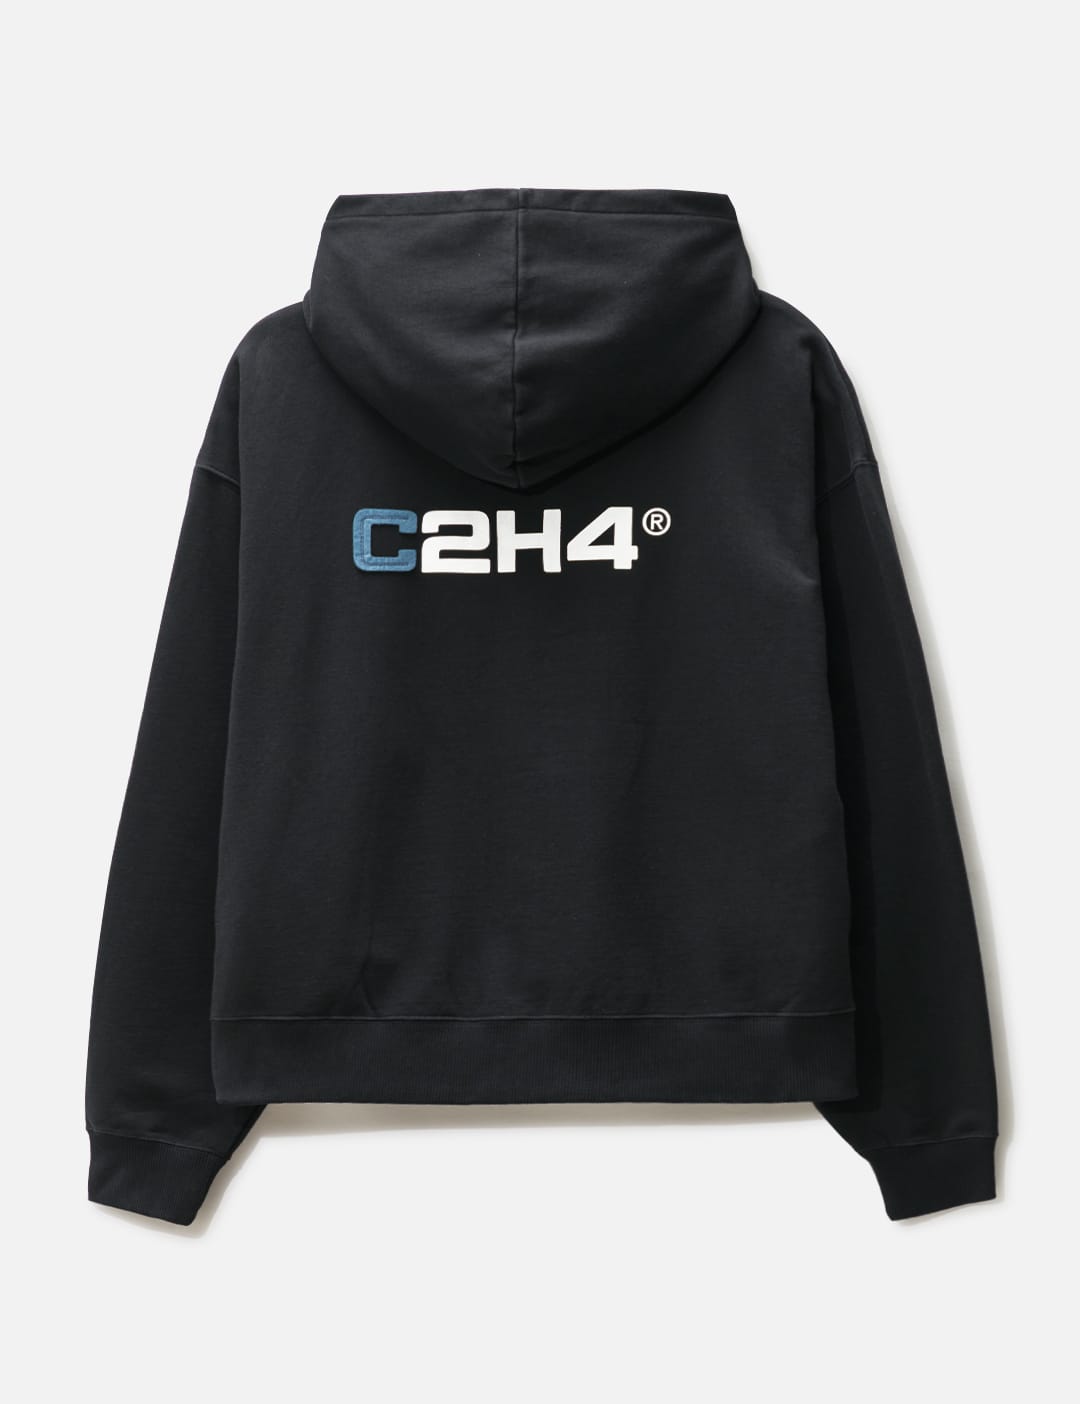 C2H4 - ステレオスコピック ジッパー スキーパンツ | HBX - ハイプ 